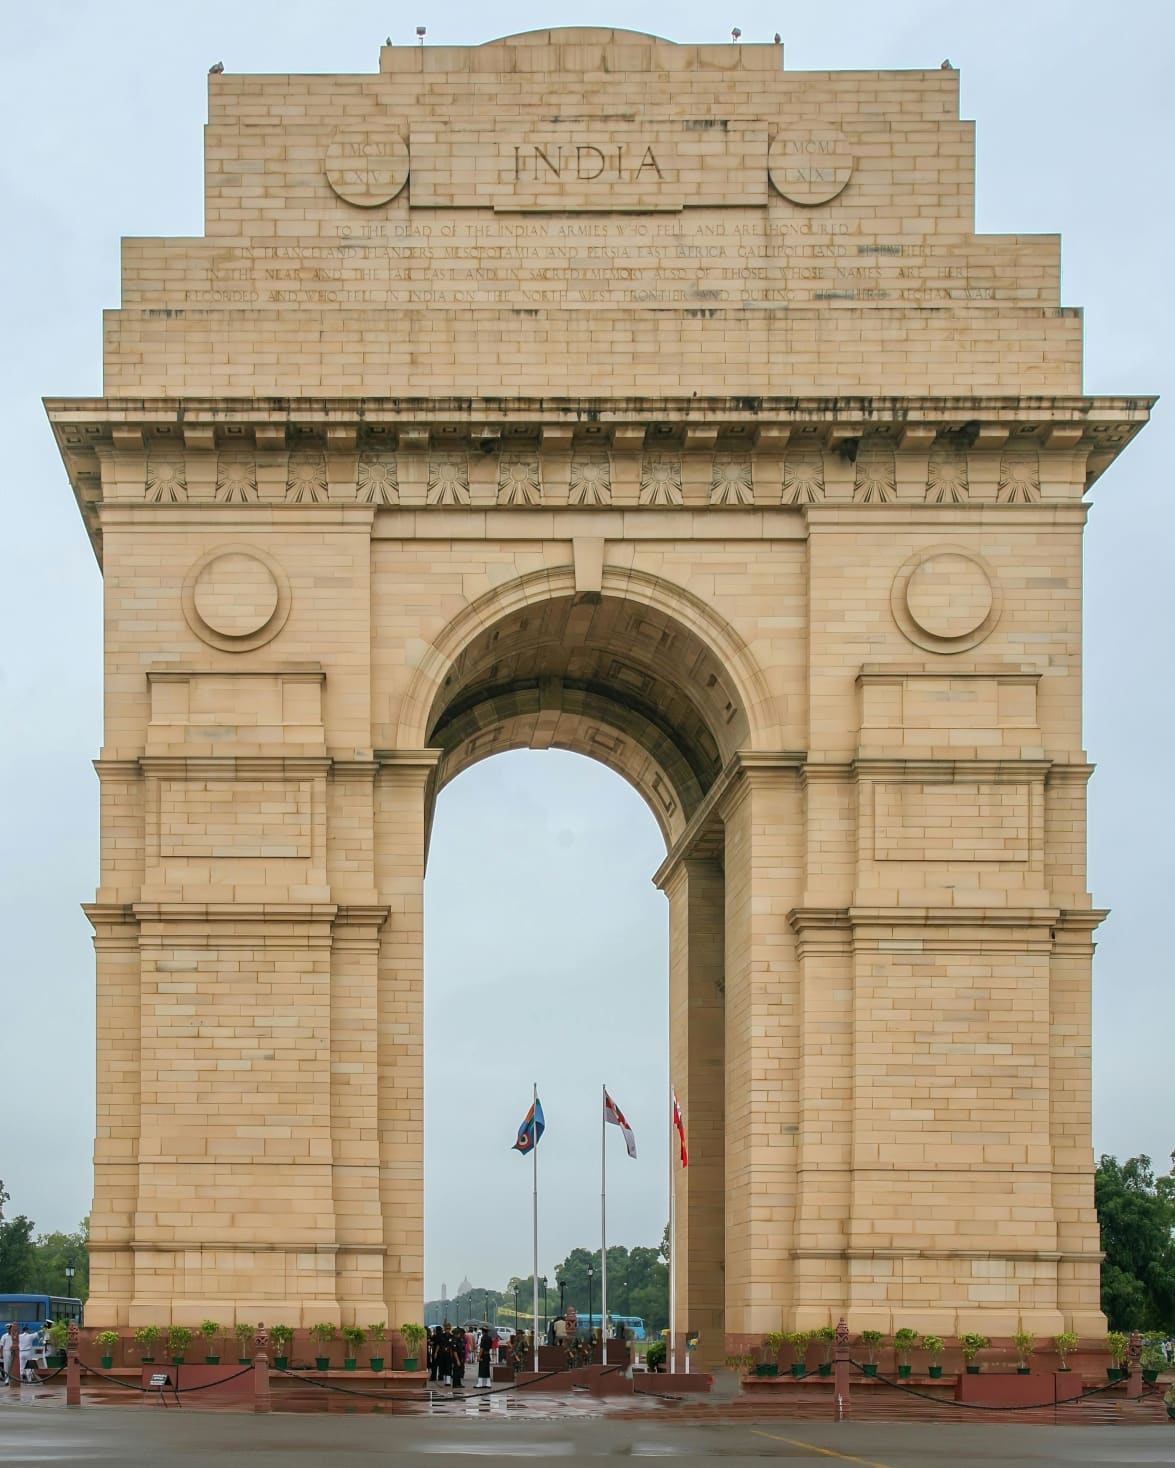 इंडिया गेट - पहिल्या विश्वयुद्धात शहीद झालेल्या हुतात्म्यांच्या स्मरणार्थ बांधलेले स्मारक